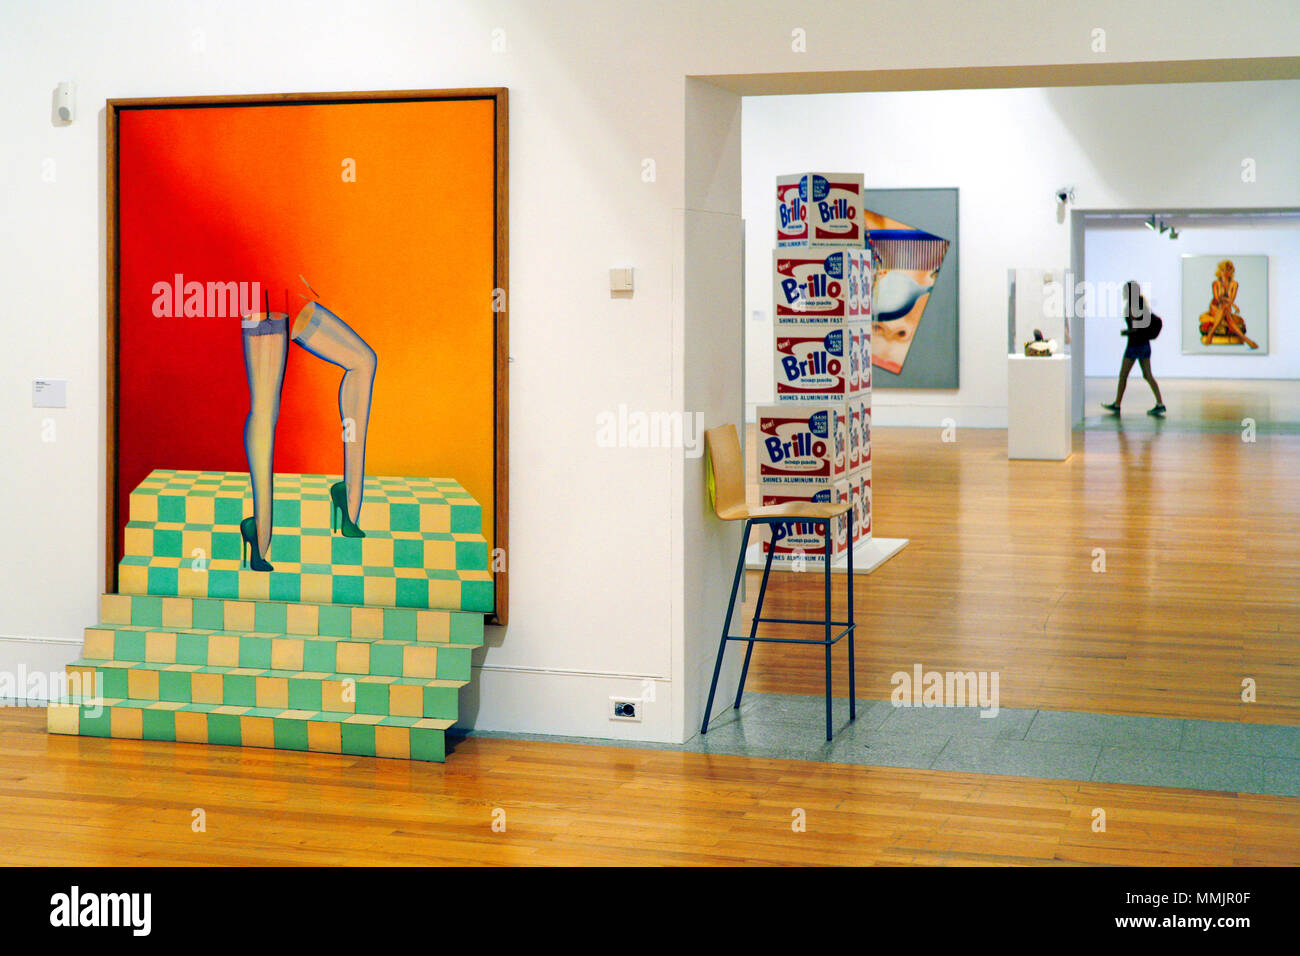 La pura (izquierda) por Allen Jones & Brillo cajas de pastillas de jabón por Andy Warhol, el Museu Colecção Berardo / Museo Colección Berardo, Belém, Lisboa, Portugal Foto de stock